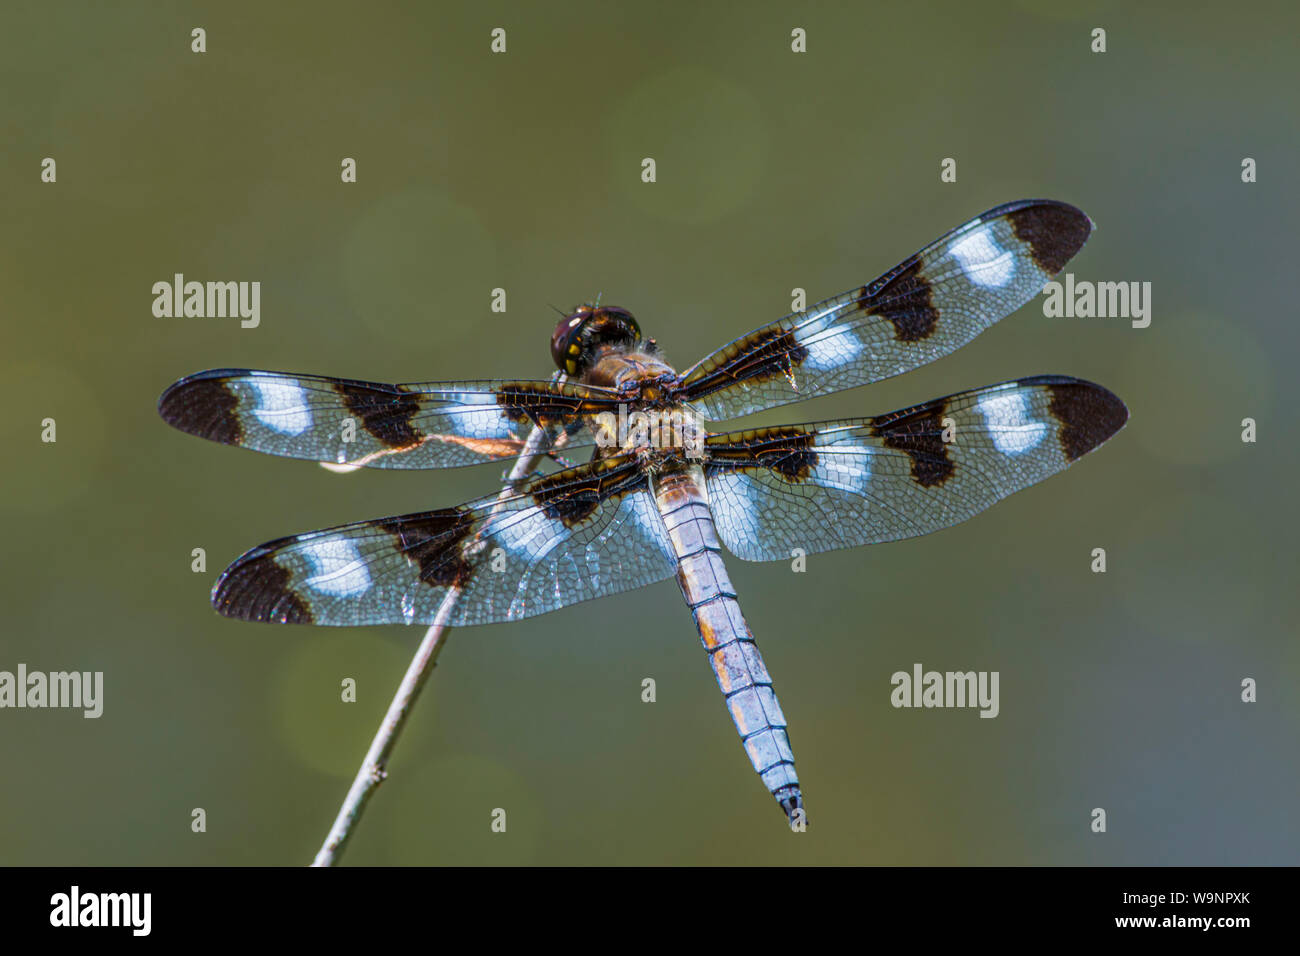 Dragonfly skimmer a dodici punte (Libellula pulchella) che riposa sul gambo del salice nello stagno della palude, Castle Rock Colorado USA. Foto scattata a luglio. Foto Stock